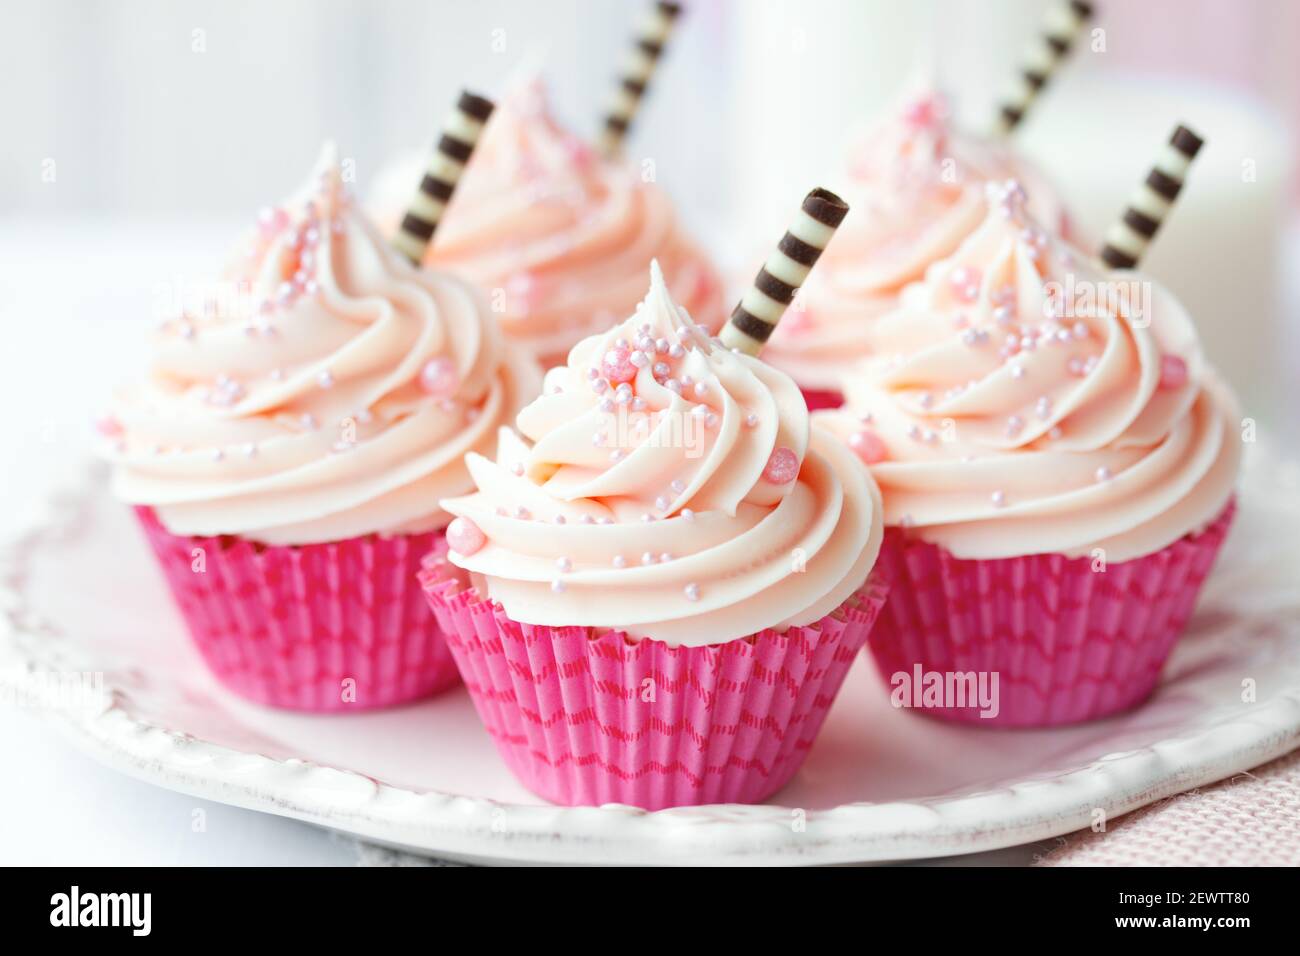 Cupcakes rosados decorados con pajitas de chocolate Foto de stock